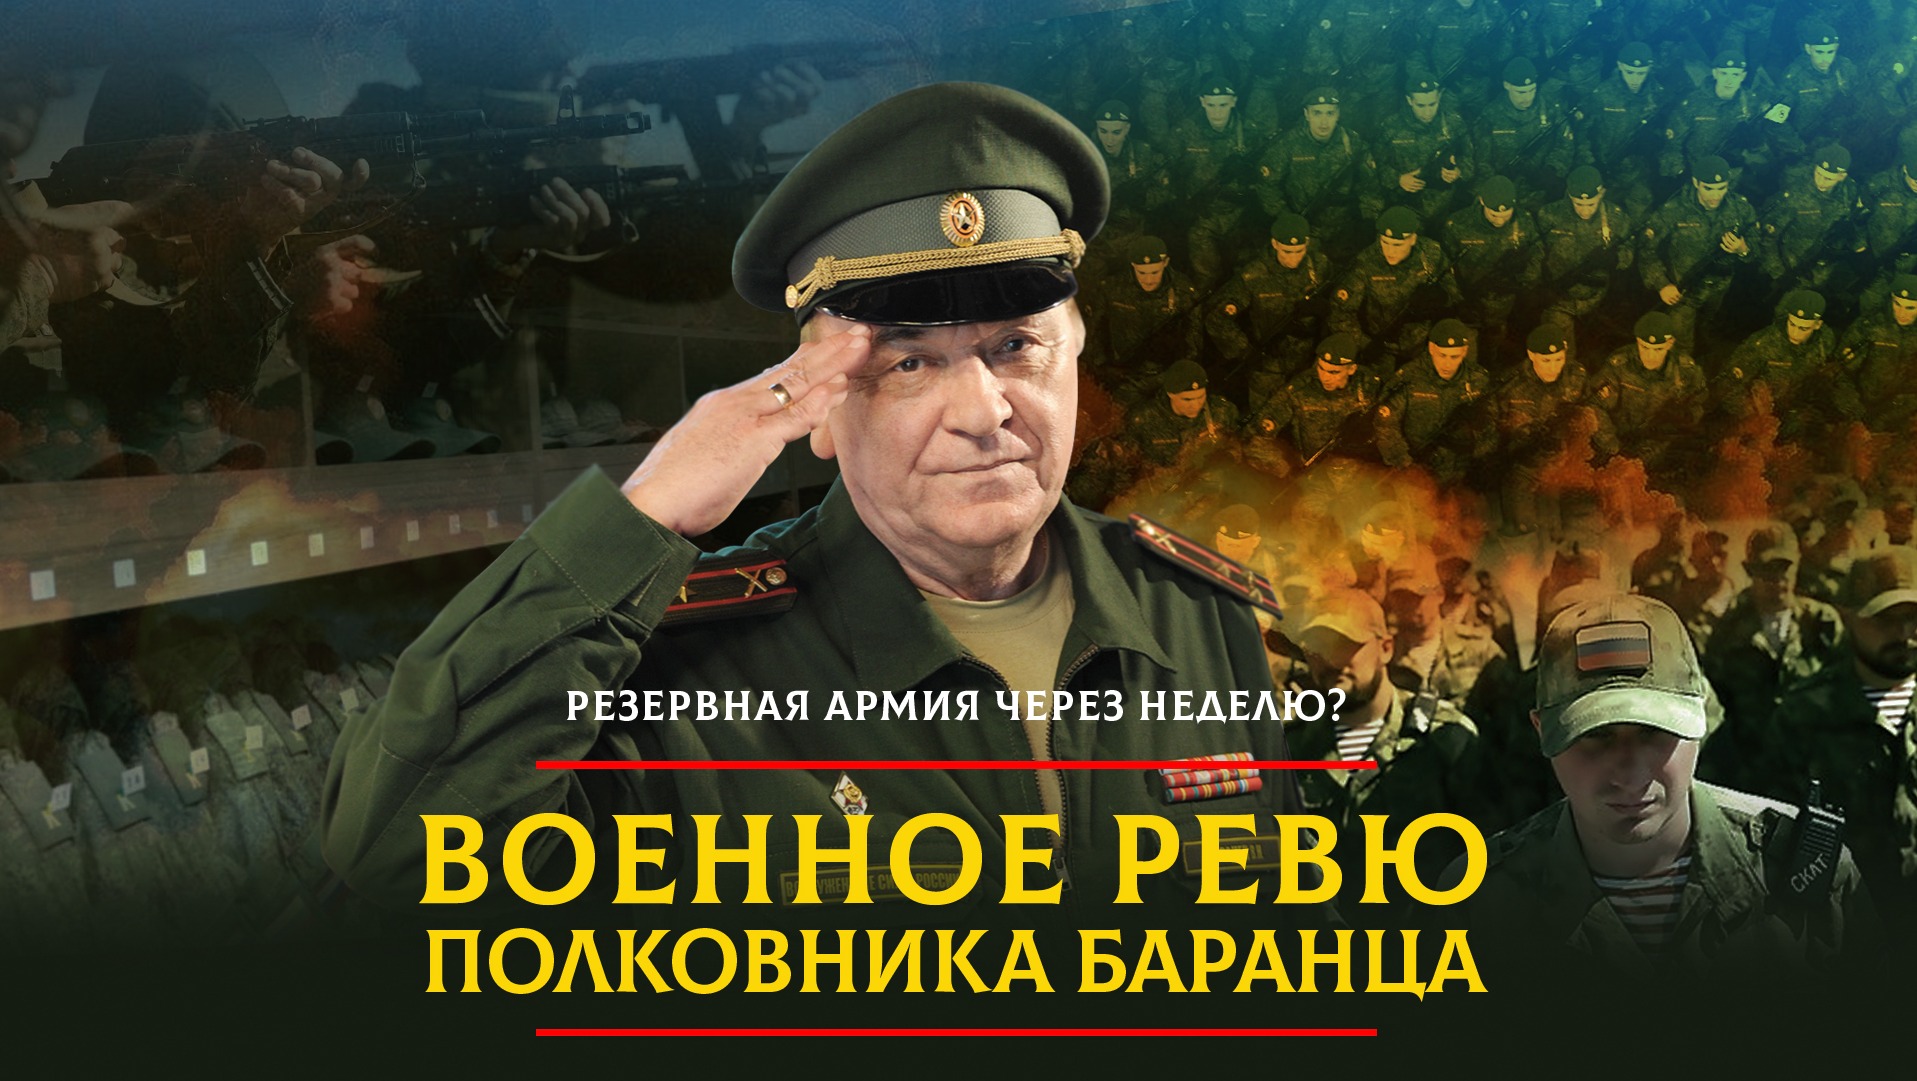 Рутуб комсомольская правда военное